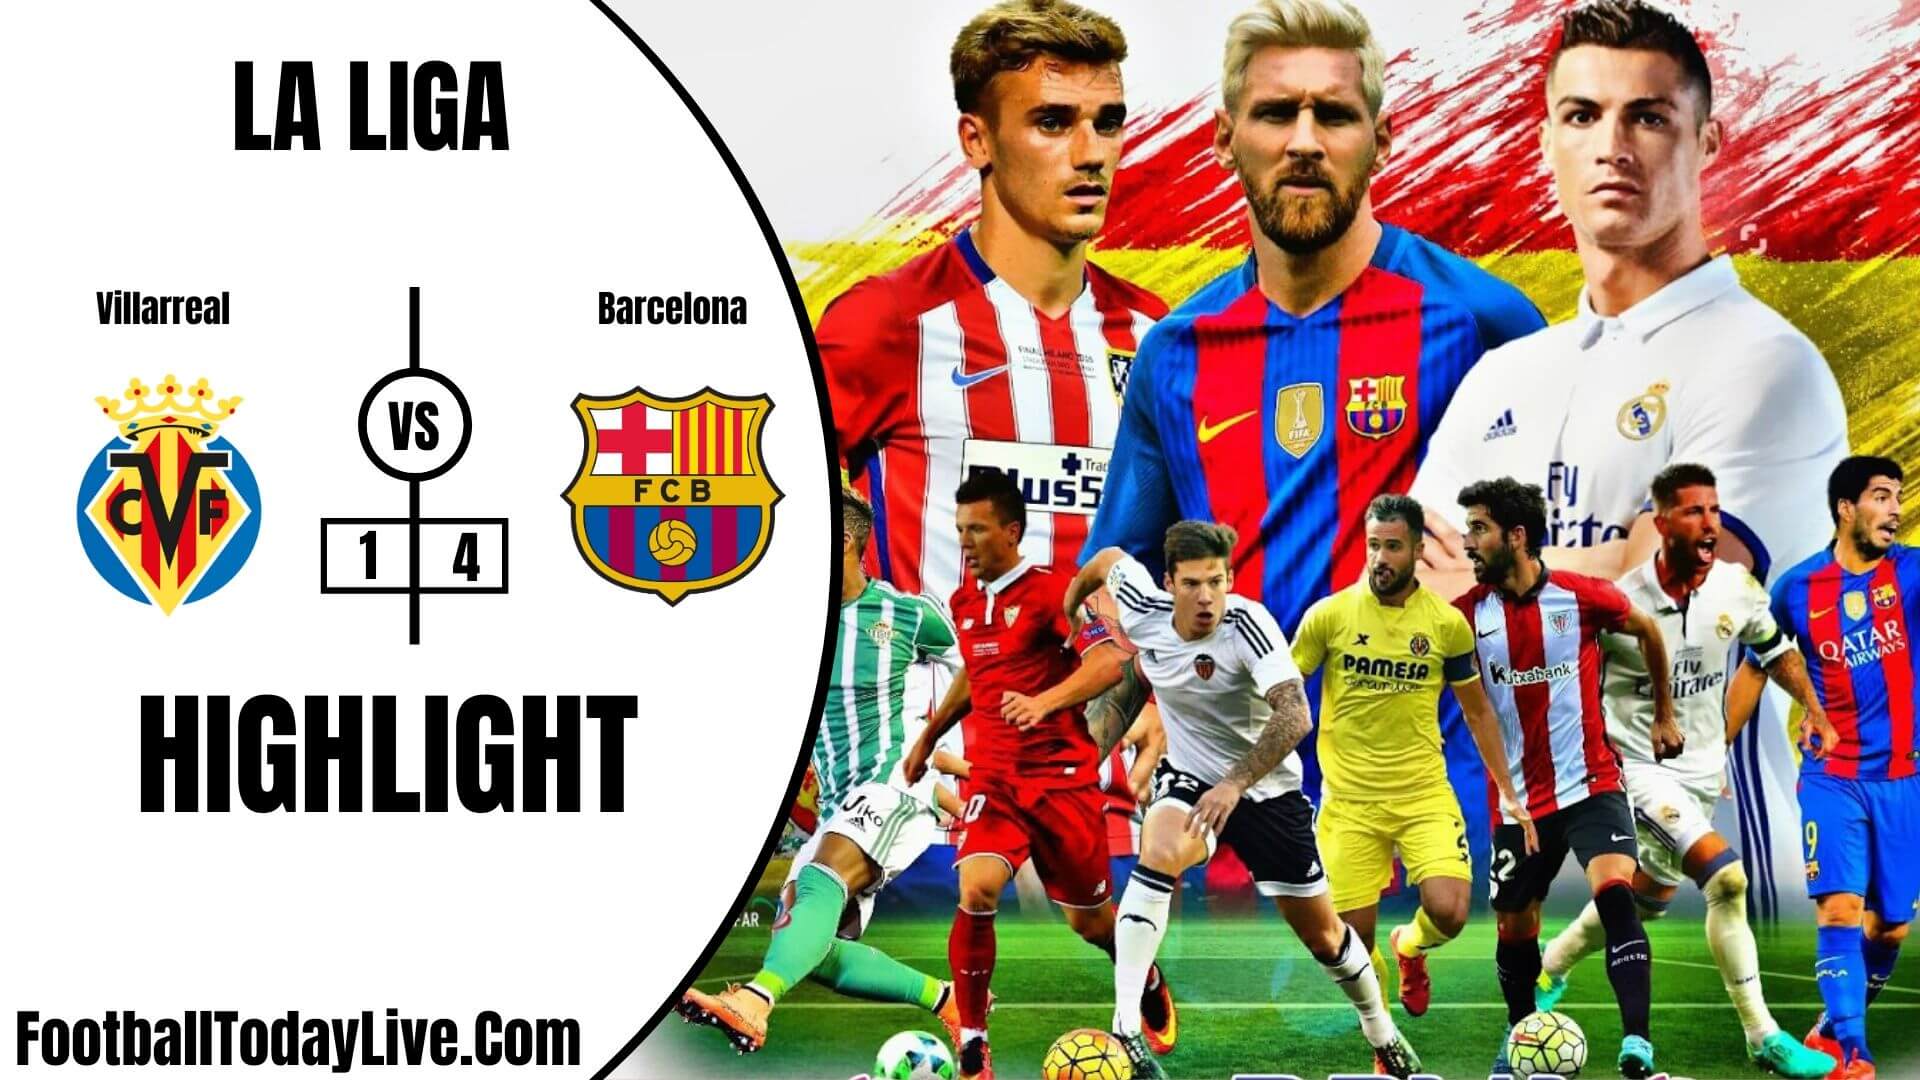 Villarreal Vs Barcelona Highlights 2020 La Liga Week 34